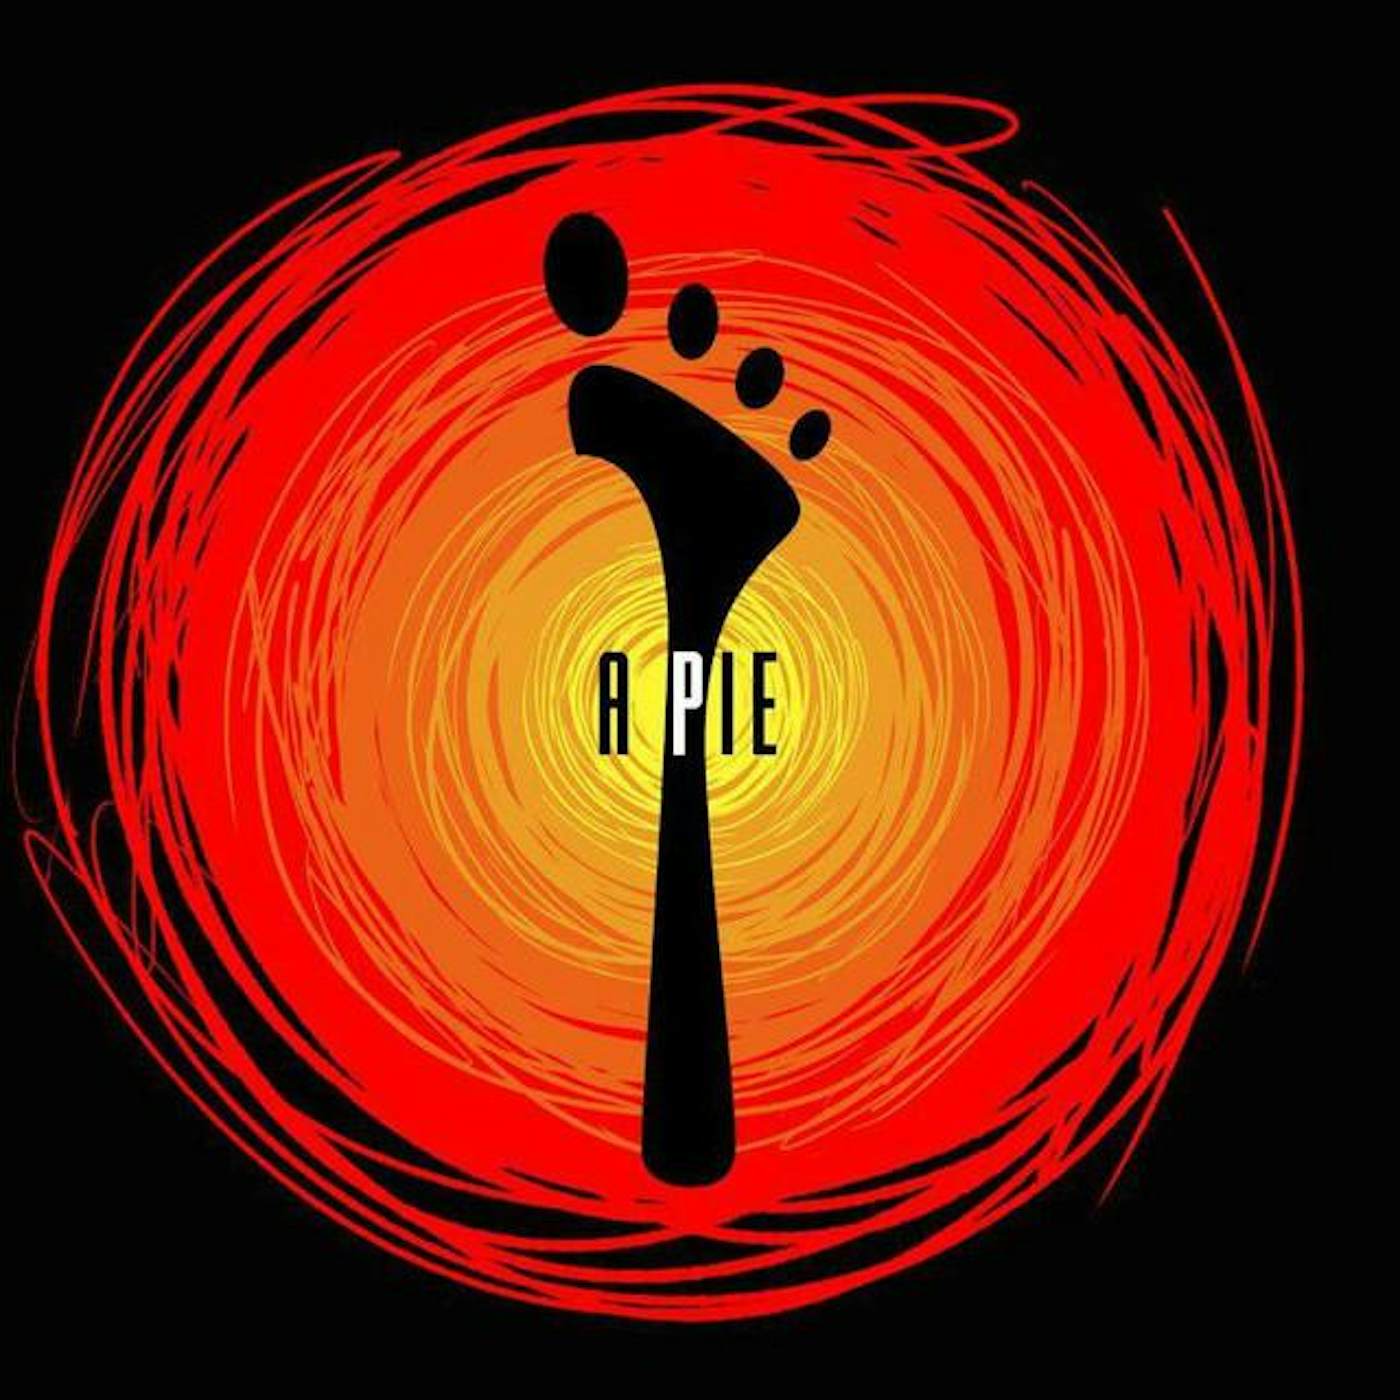 A Pie